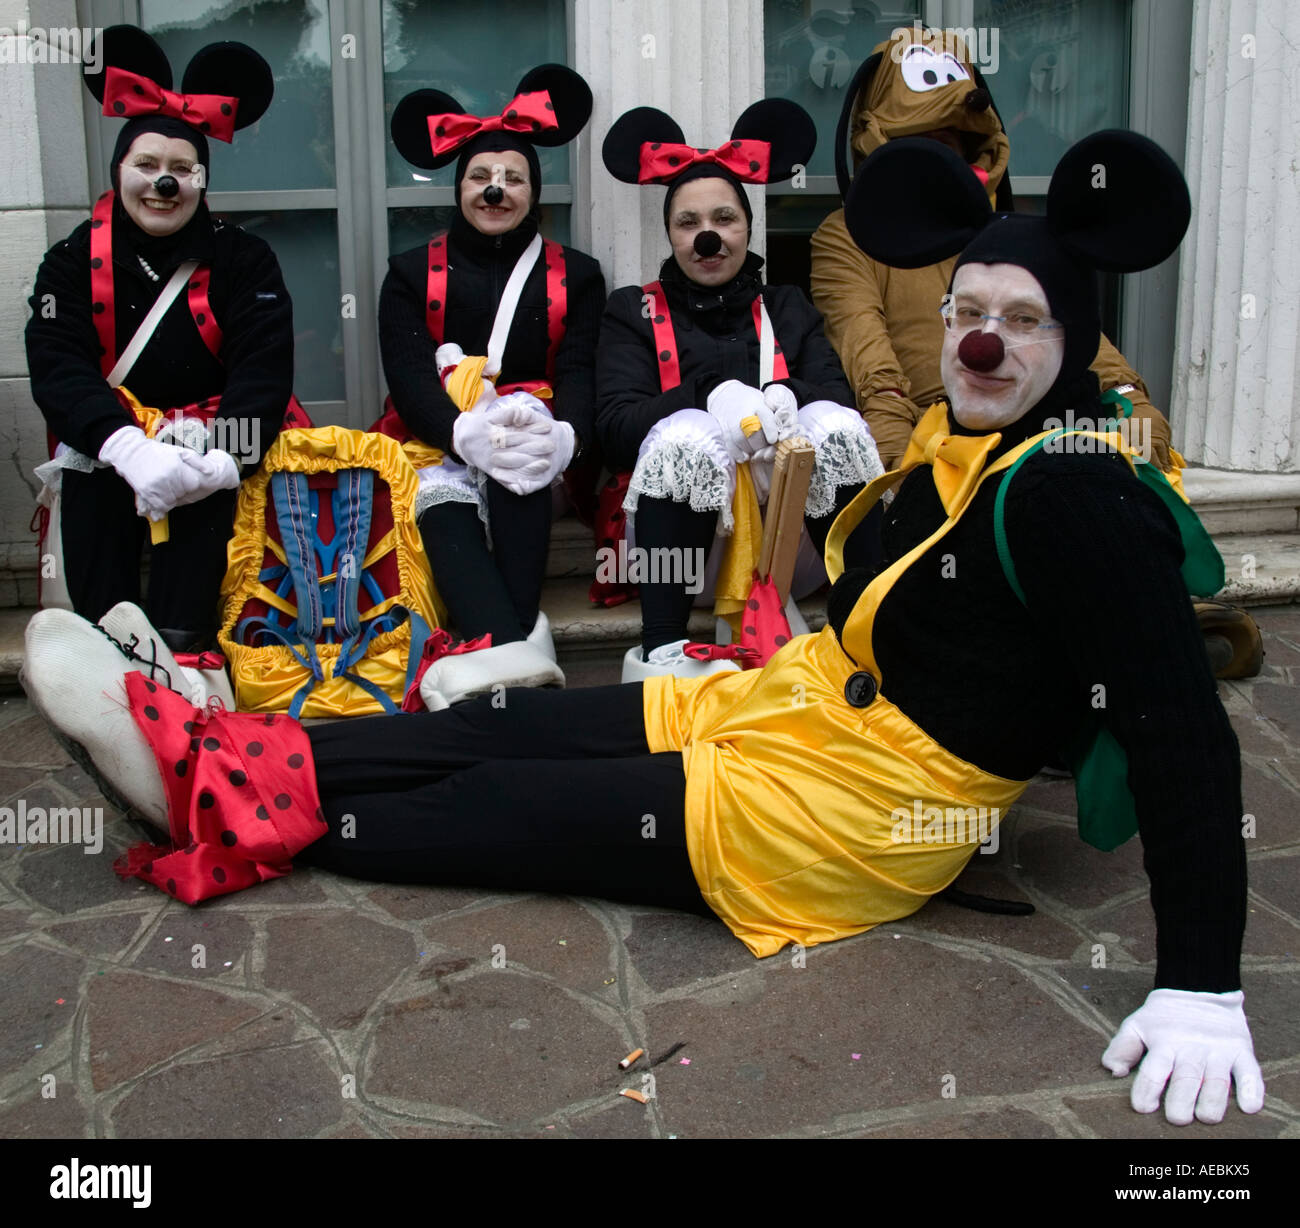 Karneval in Venedig, Figuren wie Mickey und Minnie Mouse gekleidet  Stockfotografie - Alamy